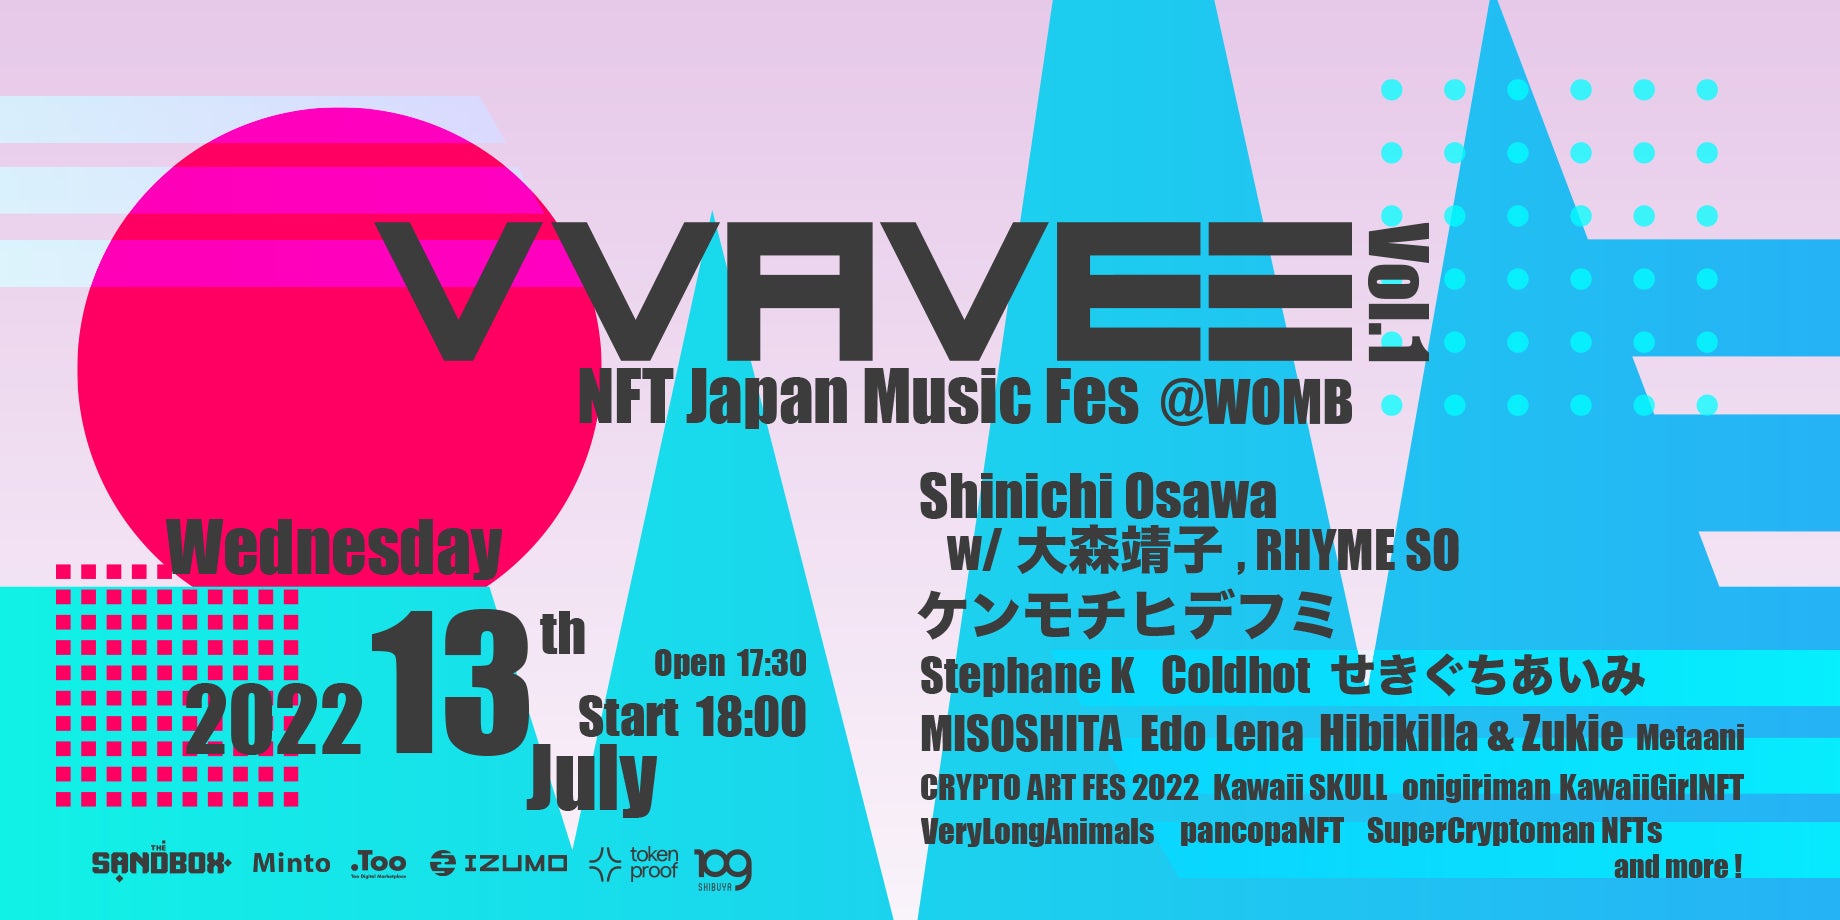 音楽 × NFTコミュニティ「VVAVE3」初のリアルイベント「VVAVE3 - NFT Japan Music Fes vol.1 -」に大森靖子とRHYME SOの出演が決定！